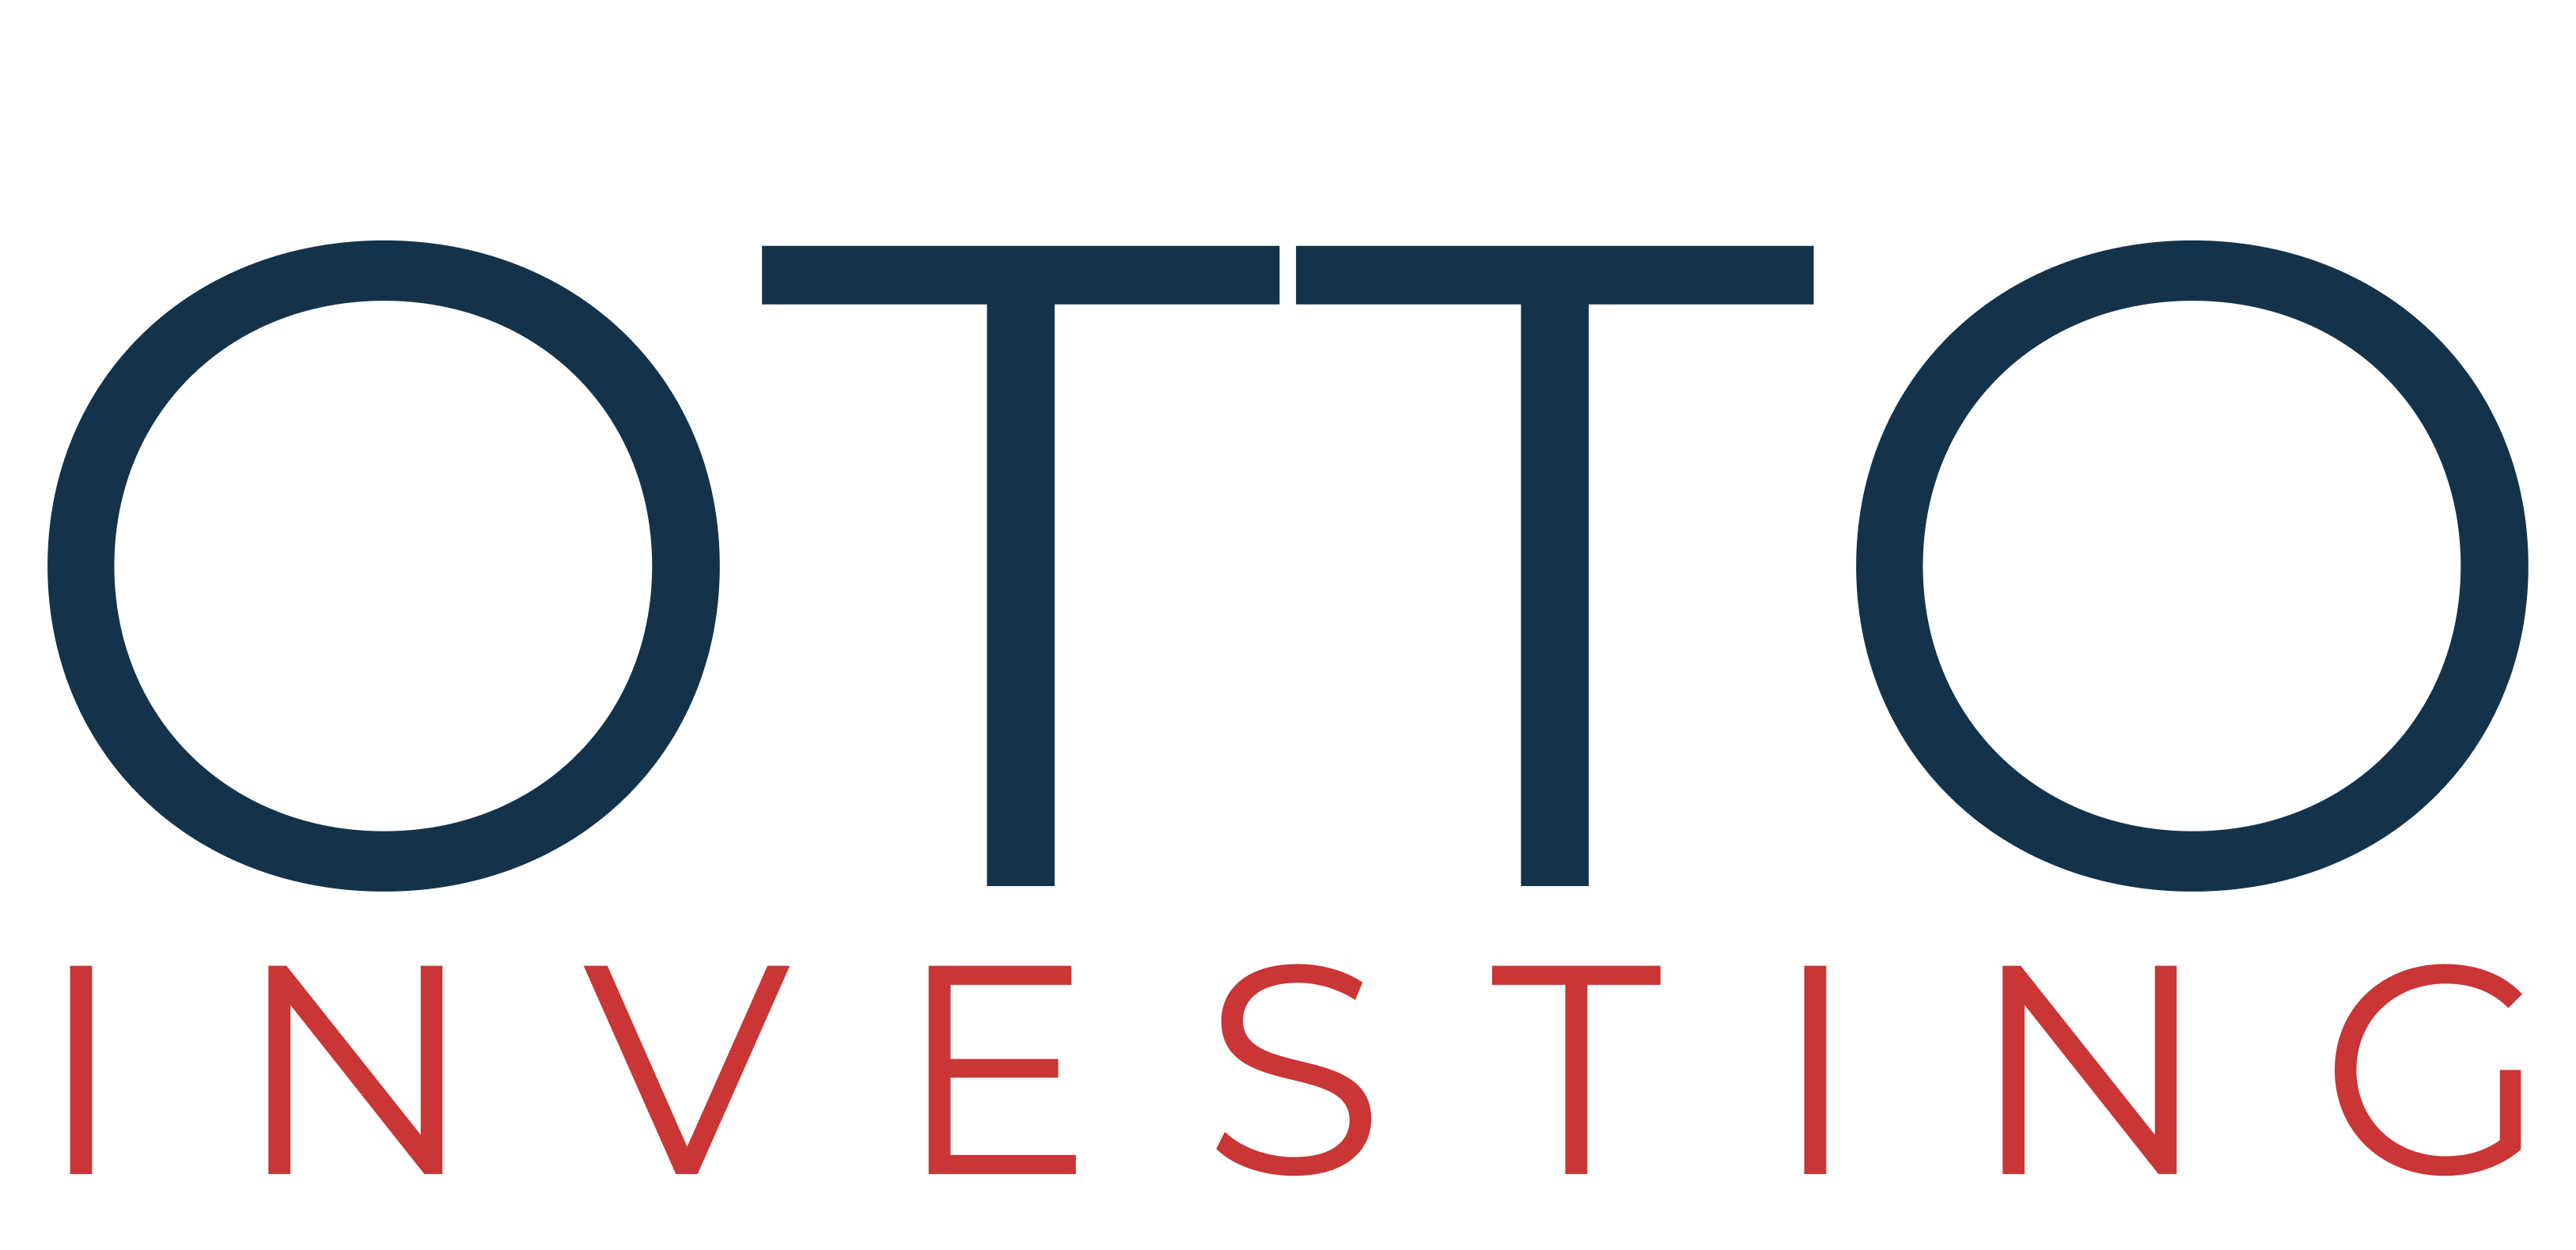 Otto investing